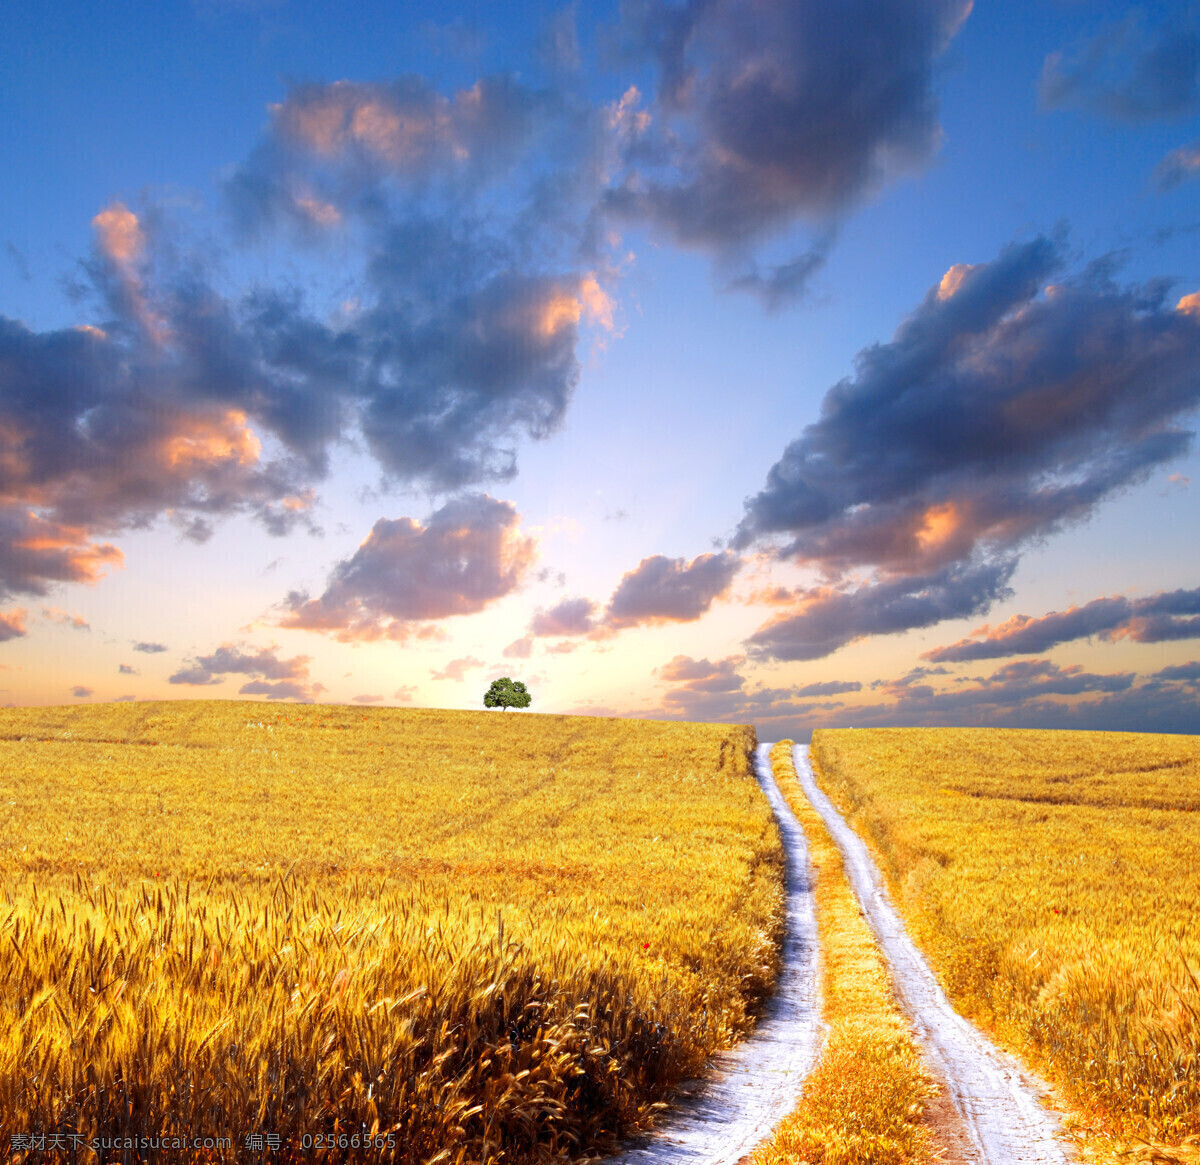 金黄的麦田 秋天 秋季 天空 蓝天 白云 太阳 阳光 小麦 麦穗 麦子 丰收 美丽景色 乡村风景 野外风景 自然风景 生态环境 自然景观